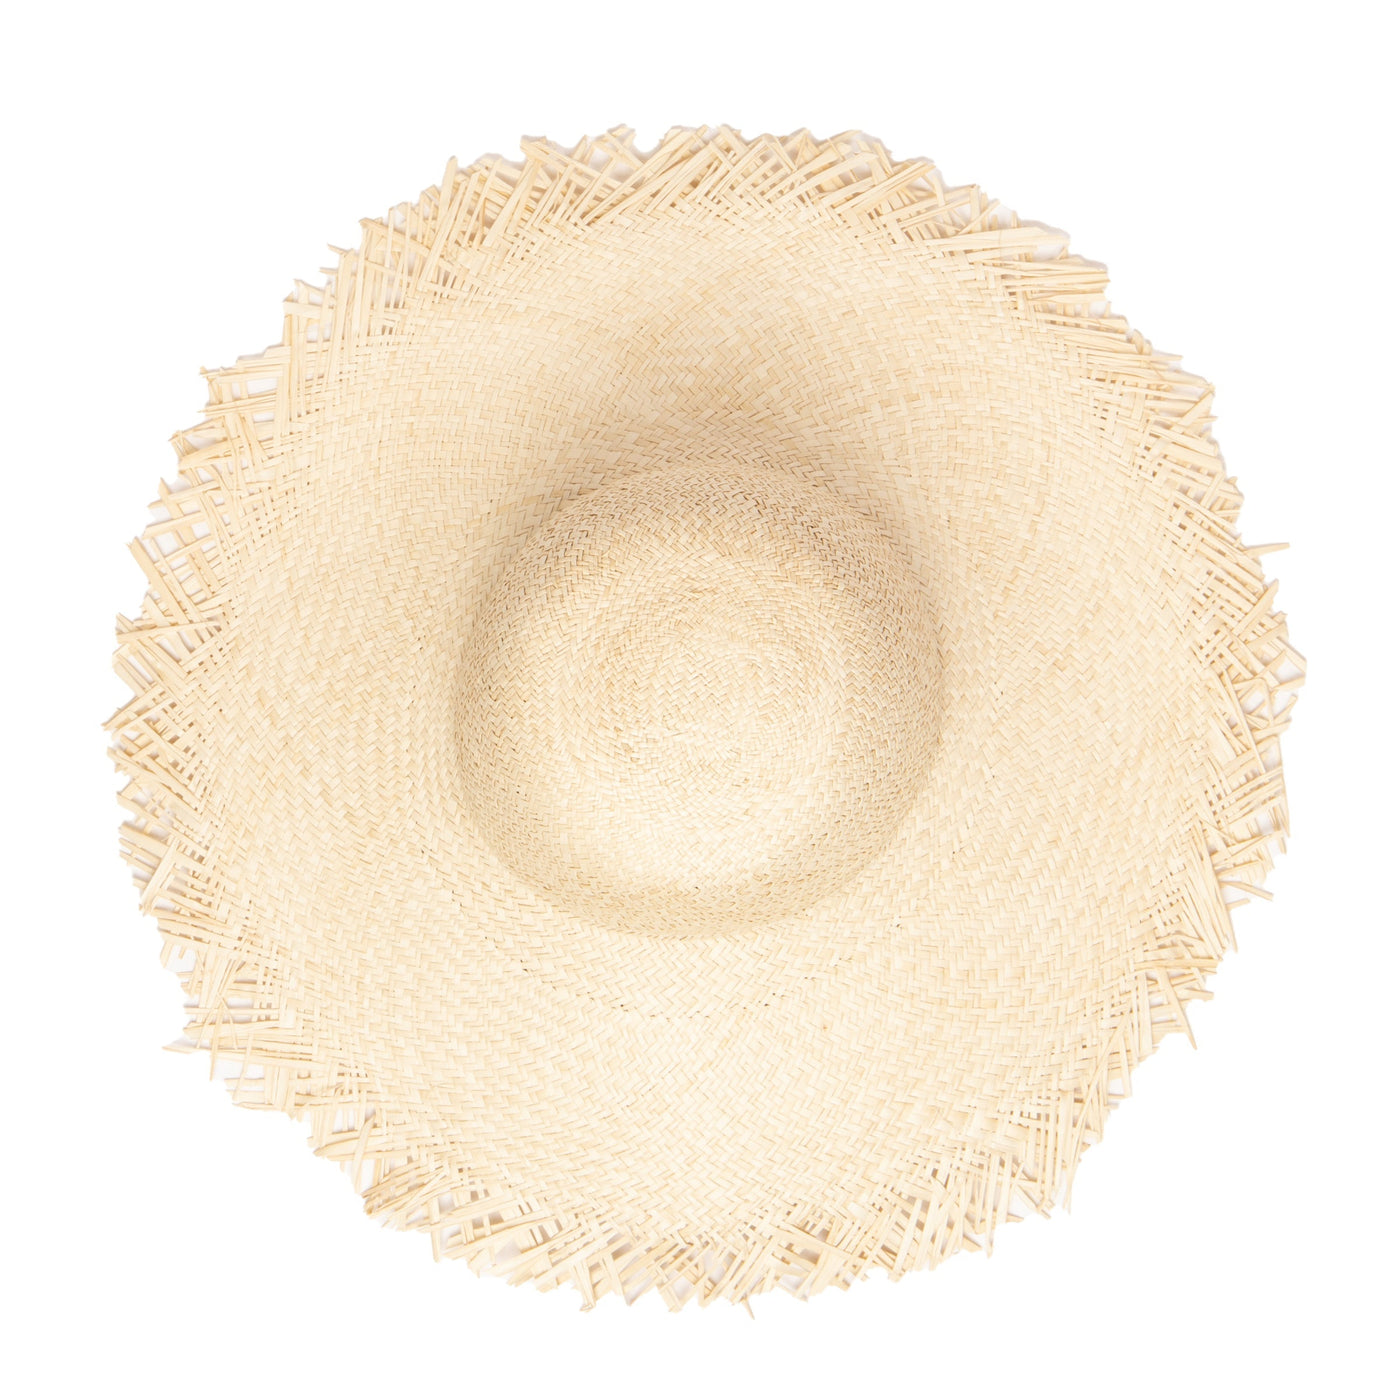 SUN BRIM - Women's Woven Sun Hat W/ Frayed Edge (SPS1006)